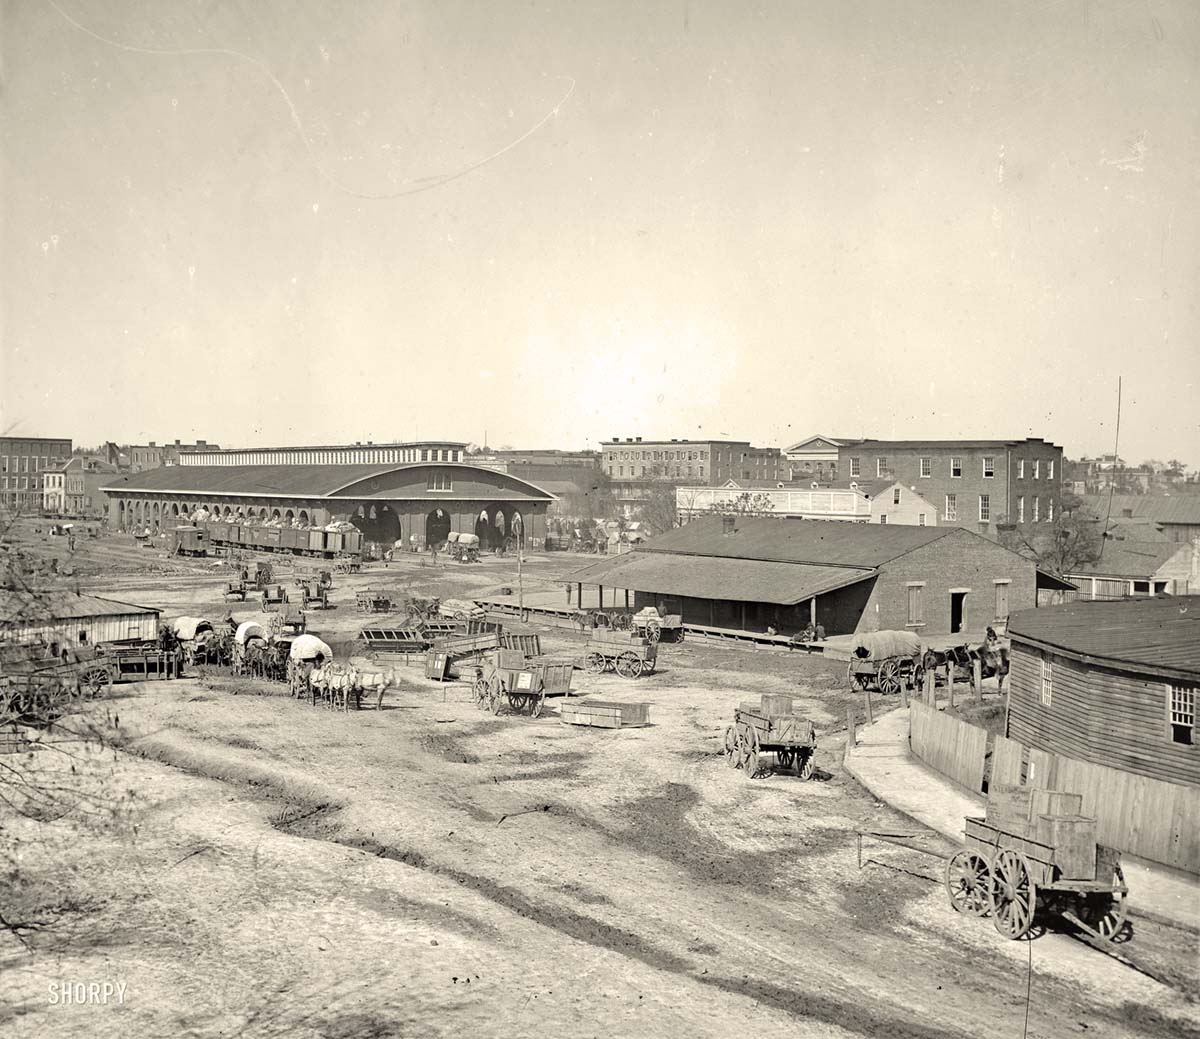 Atlanta. Railroad depot and yard, 1864